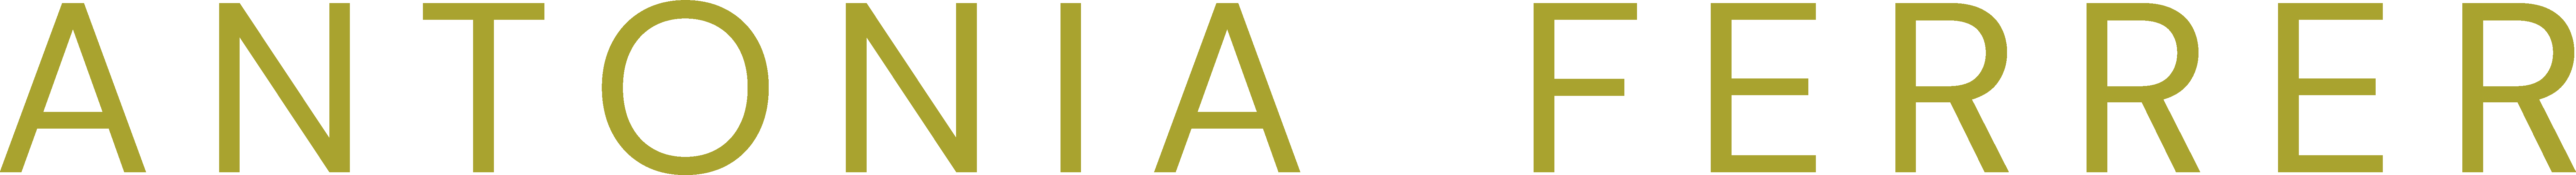 Antonia-Ferrer-logo